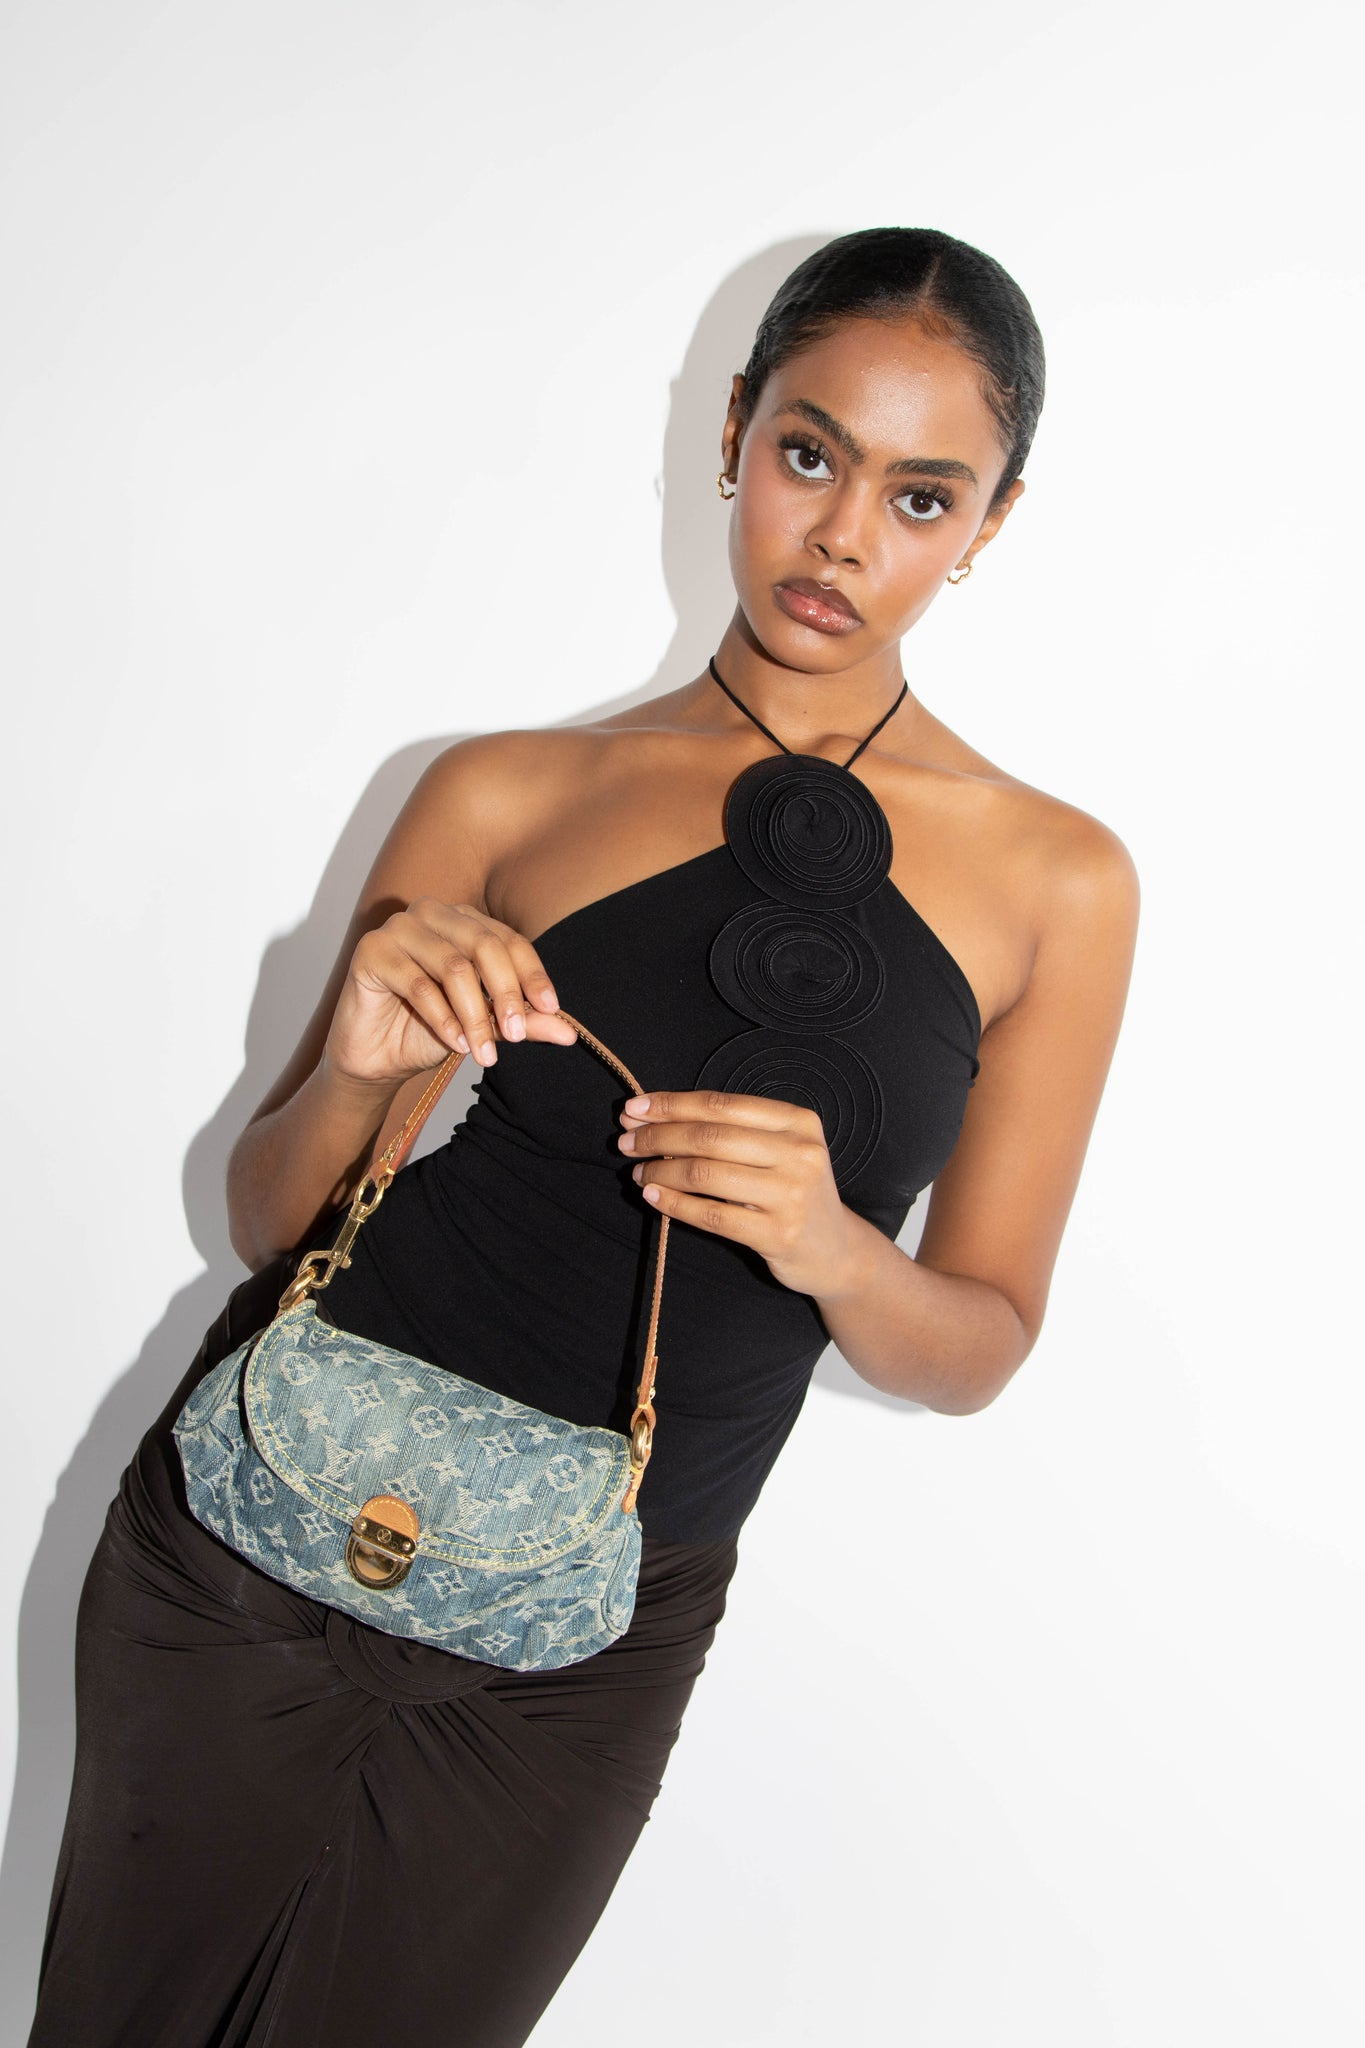 Louis Vuitton Pleaty Handbag